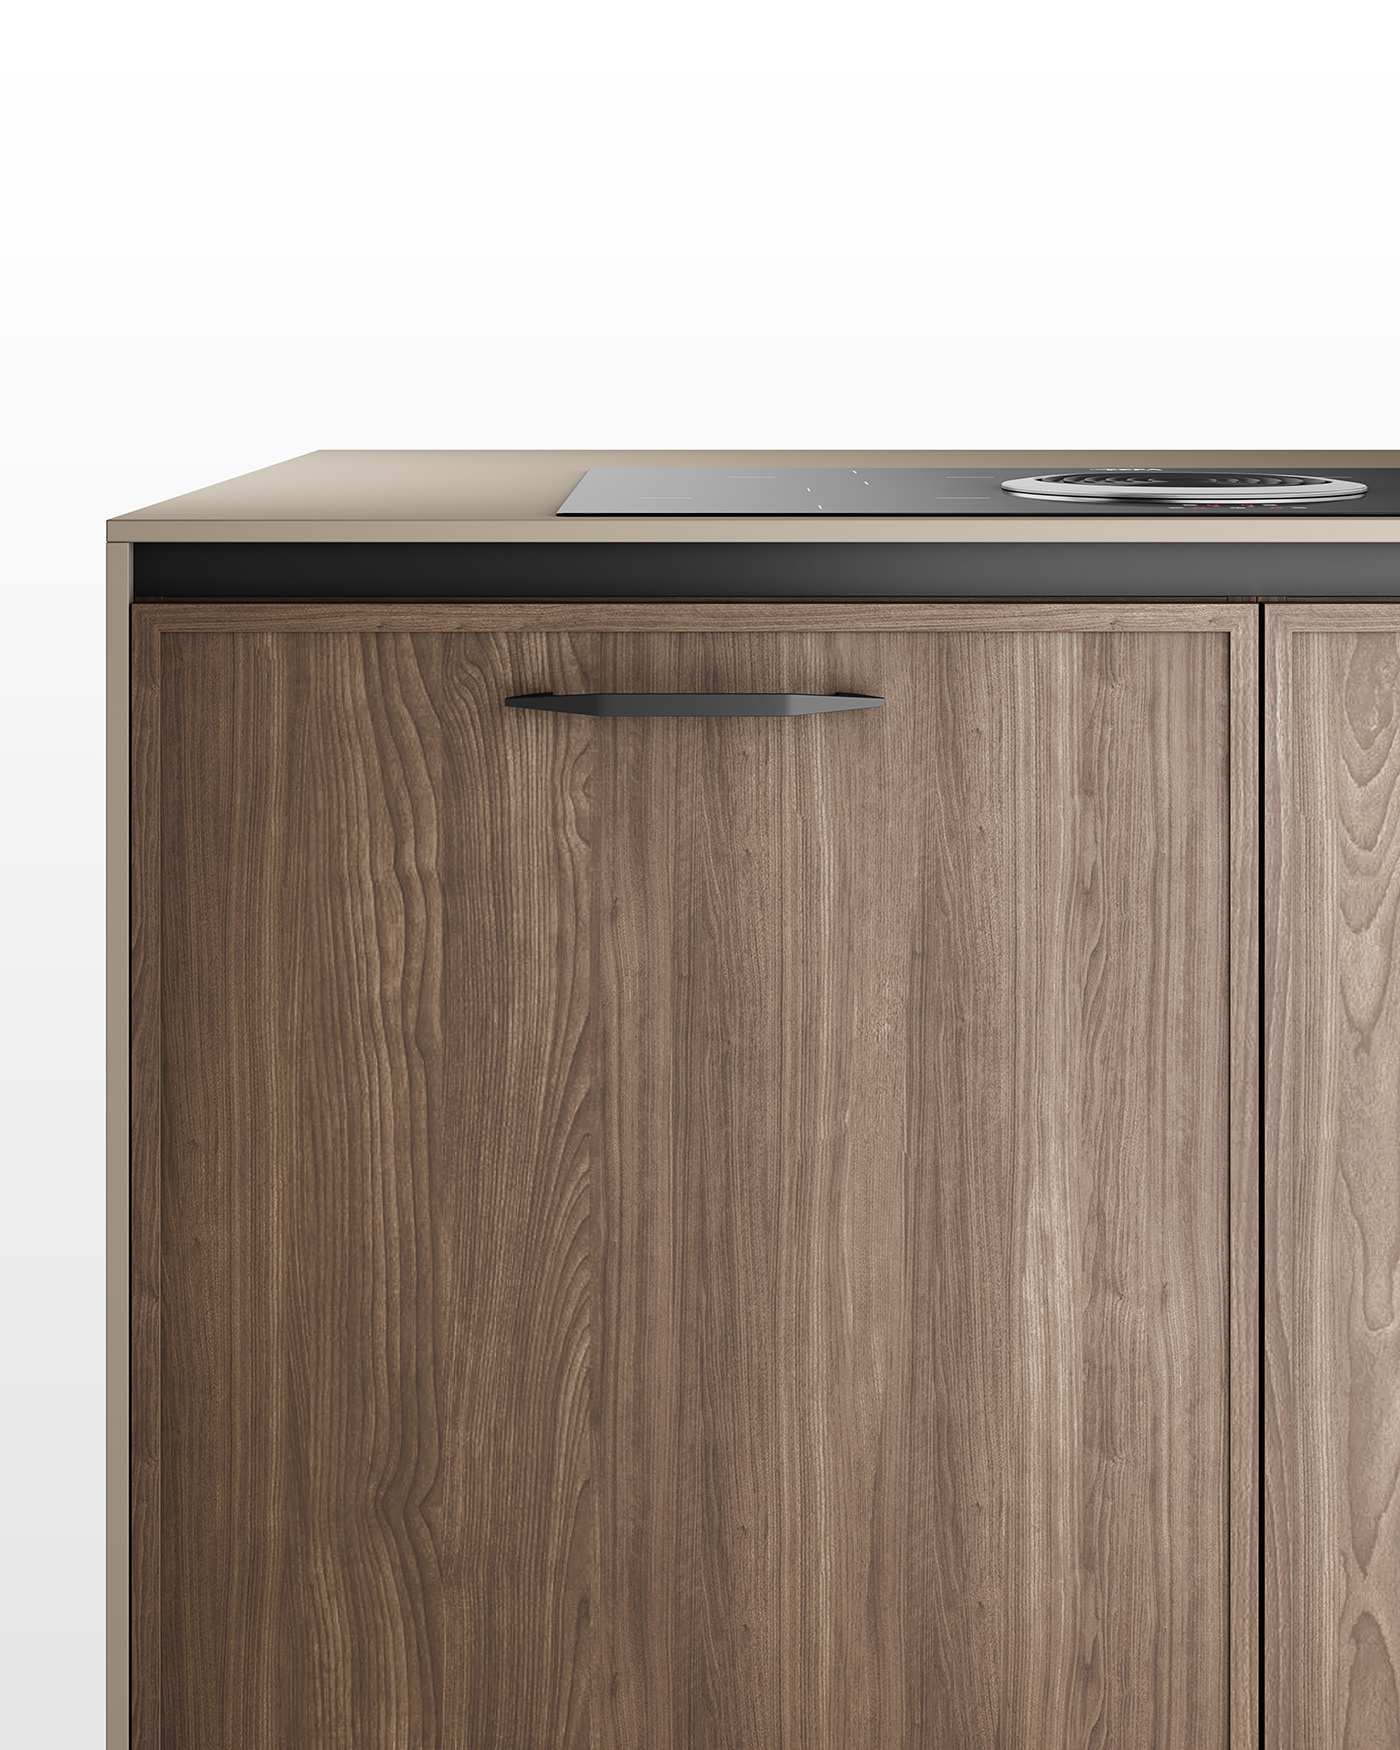 3ds max corona renderer Render CGI design kitchen design kitchen architecture